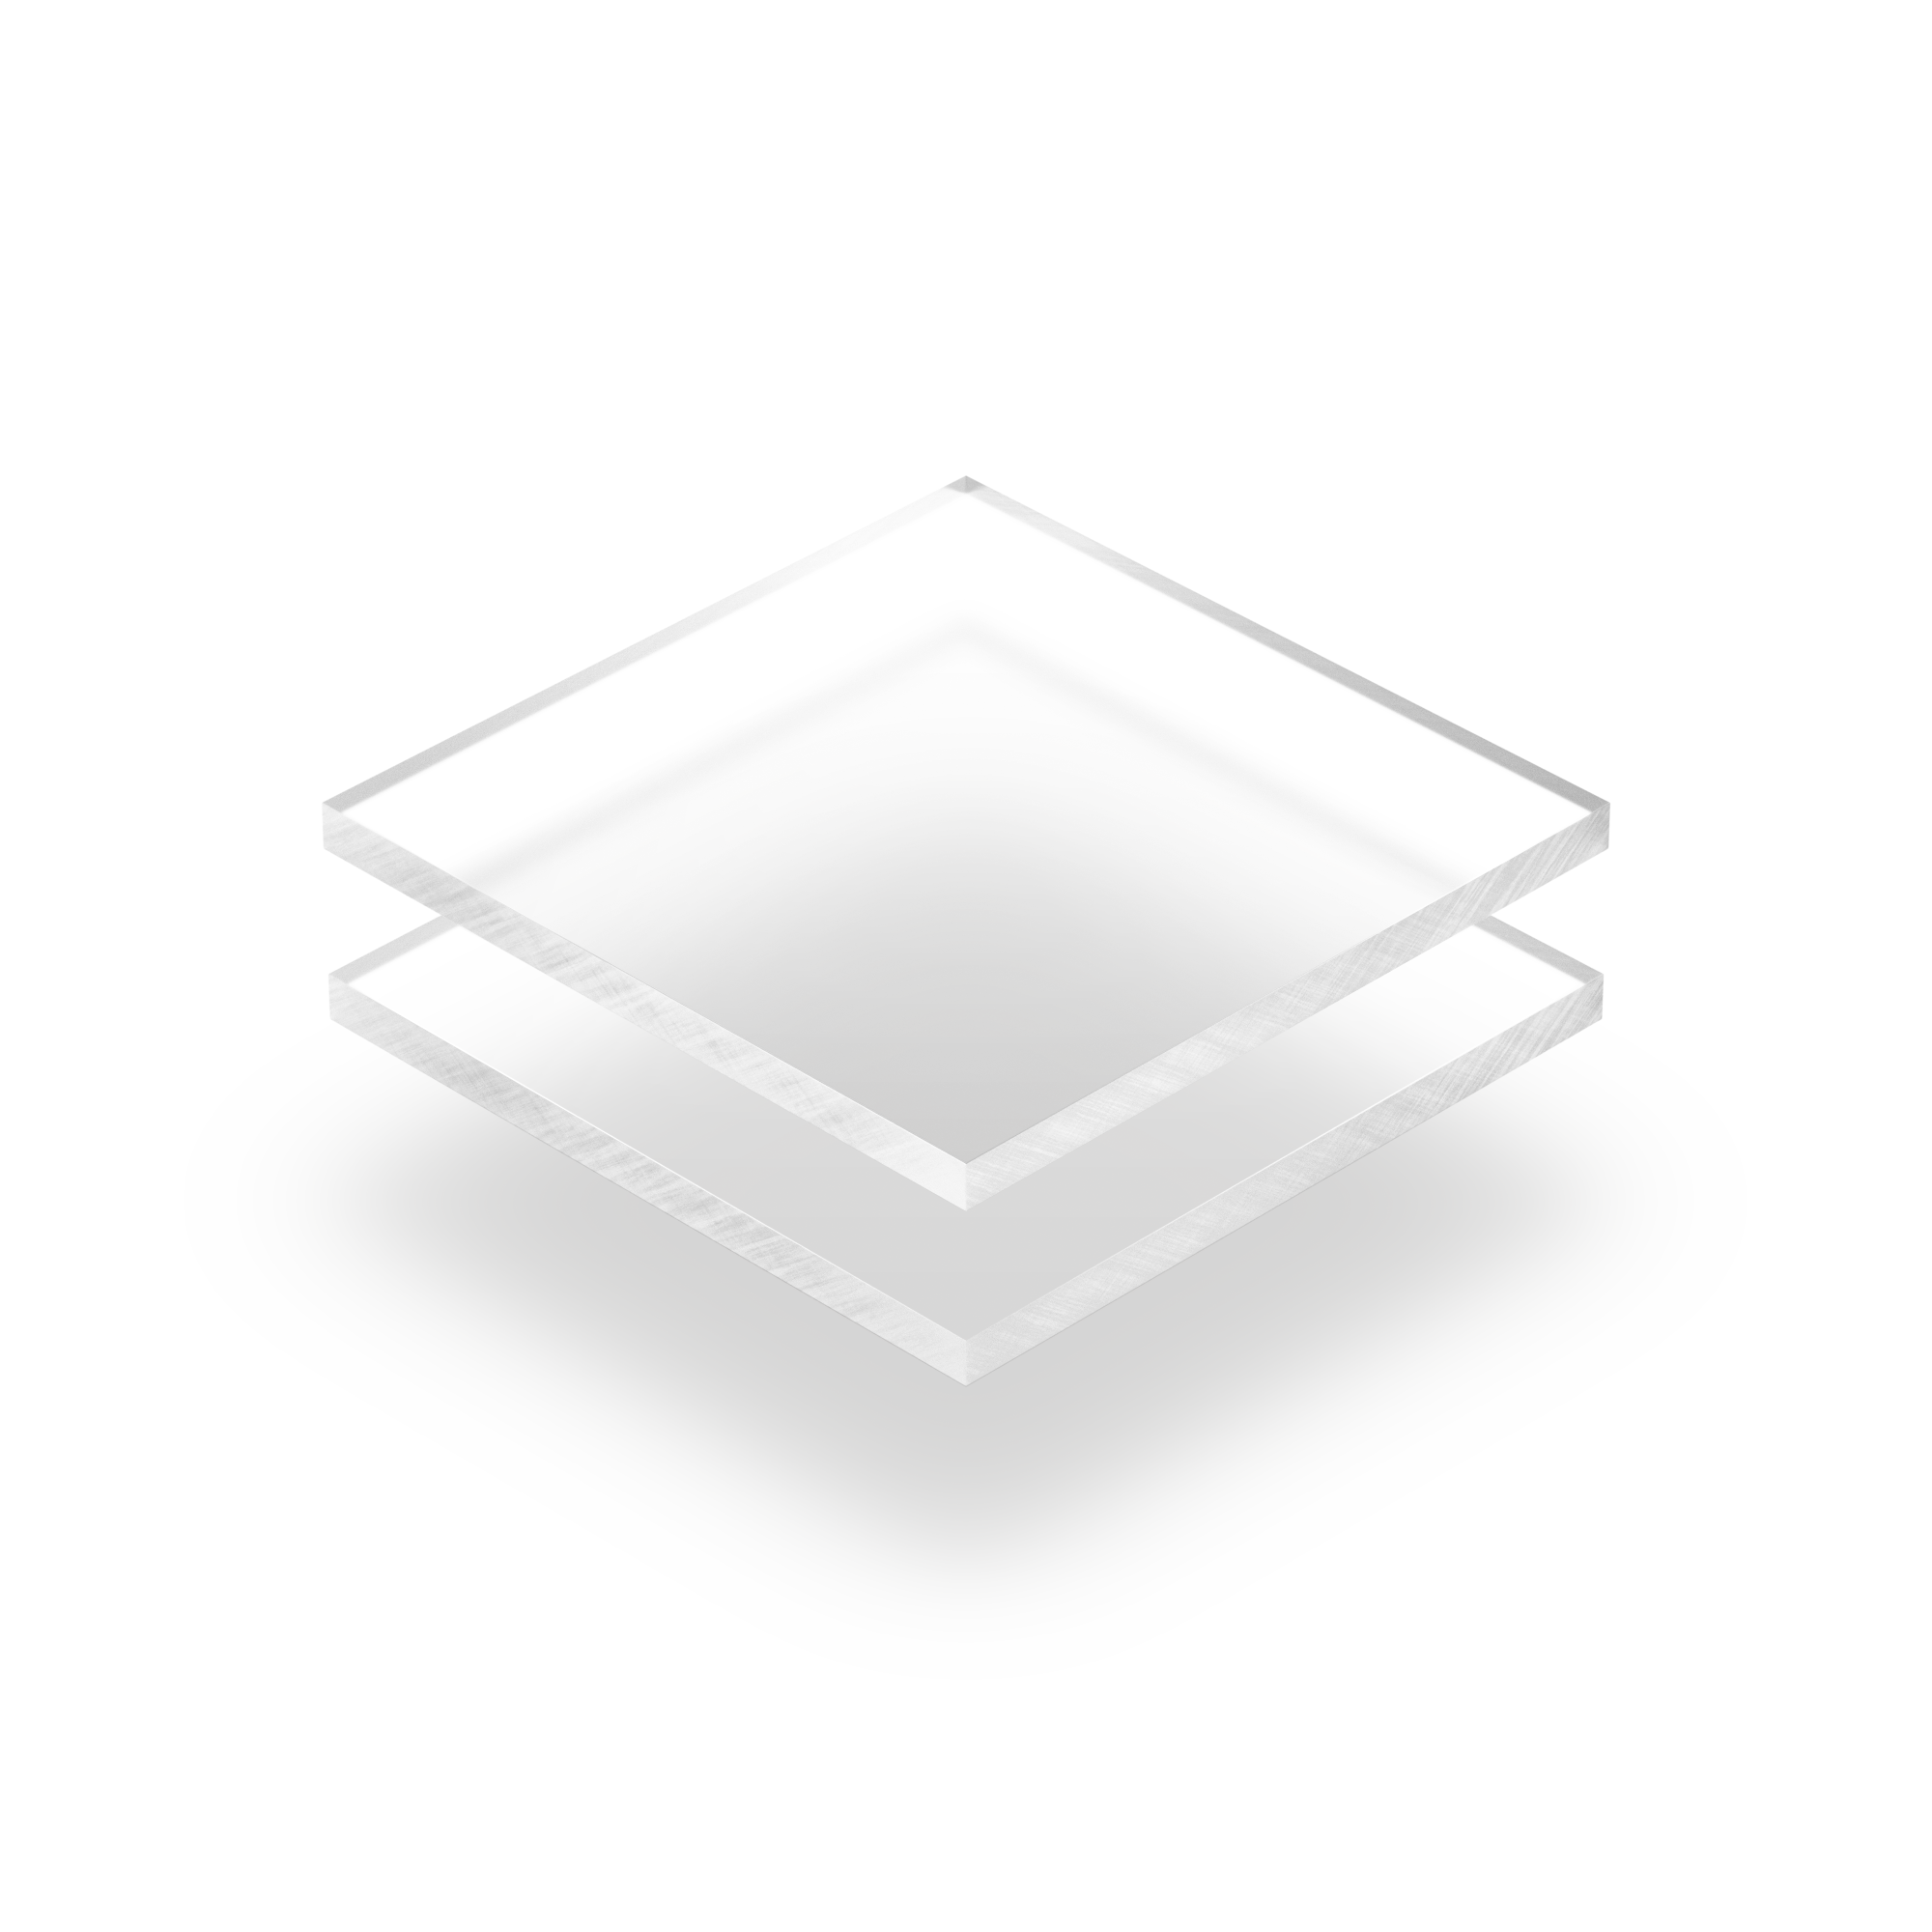 Plaque rectangle plexi - plaque qr code plexiglass aspect givré